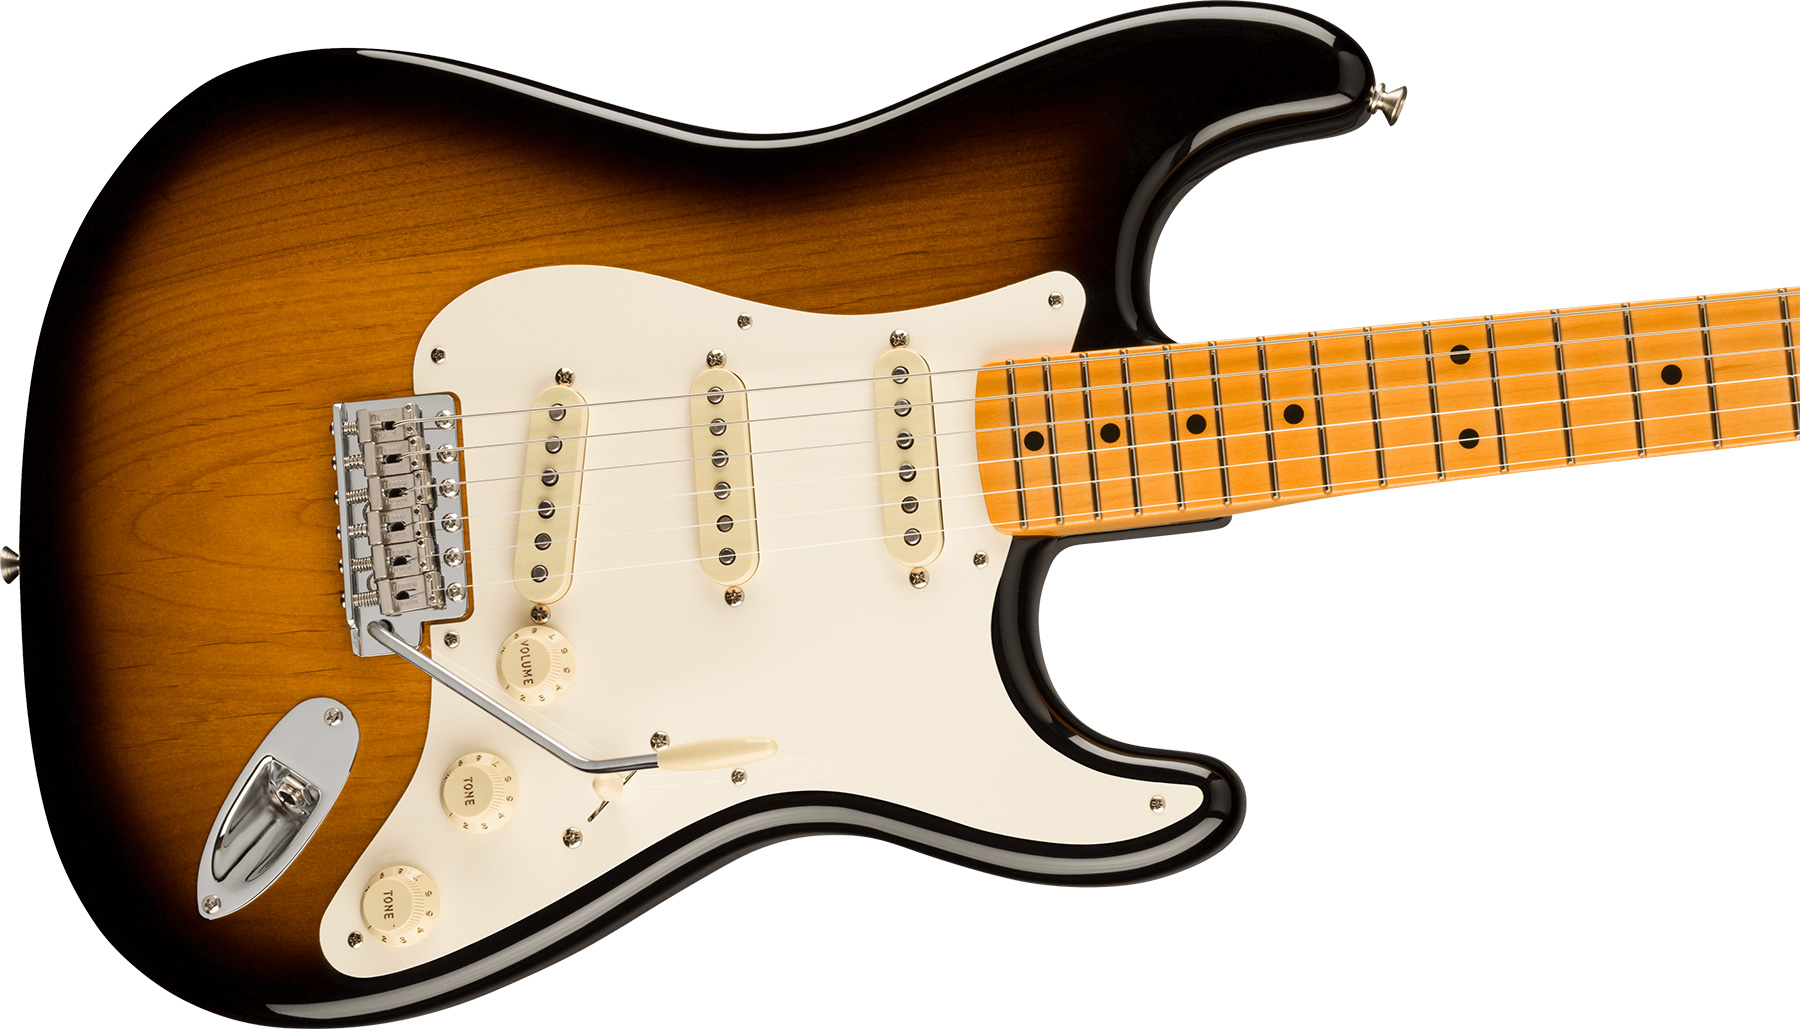 Fender Strat 1957 American Vintage Ii Usa 3s Trem Mn - 2-color Sunburst - Str shape electric guitar - Variation 2